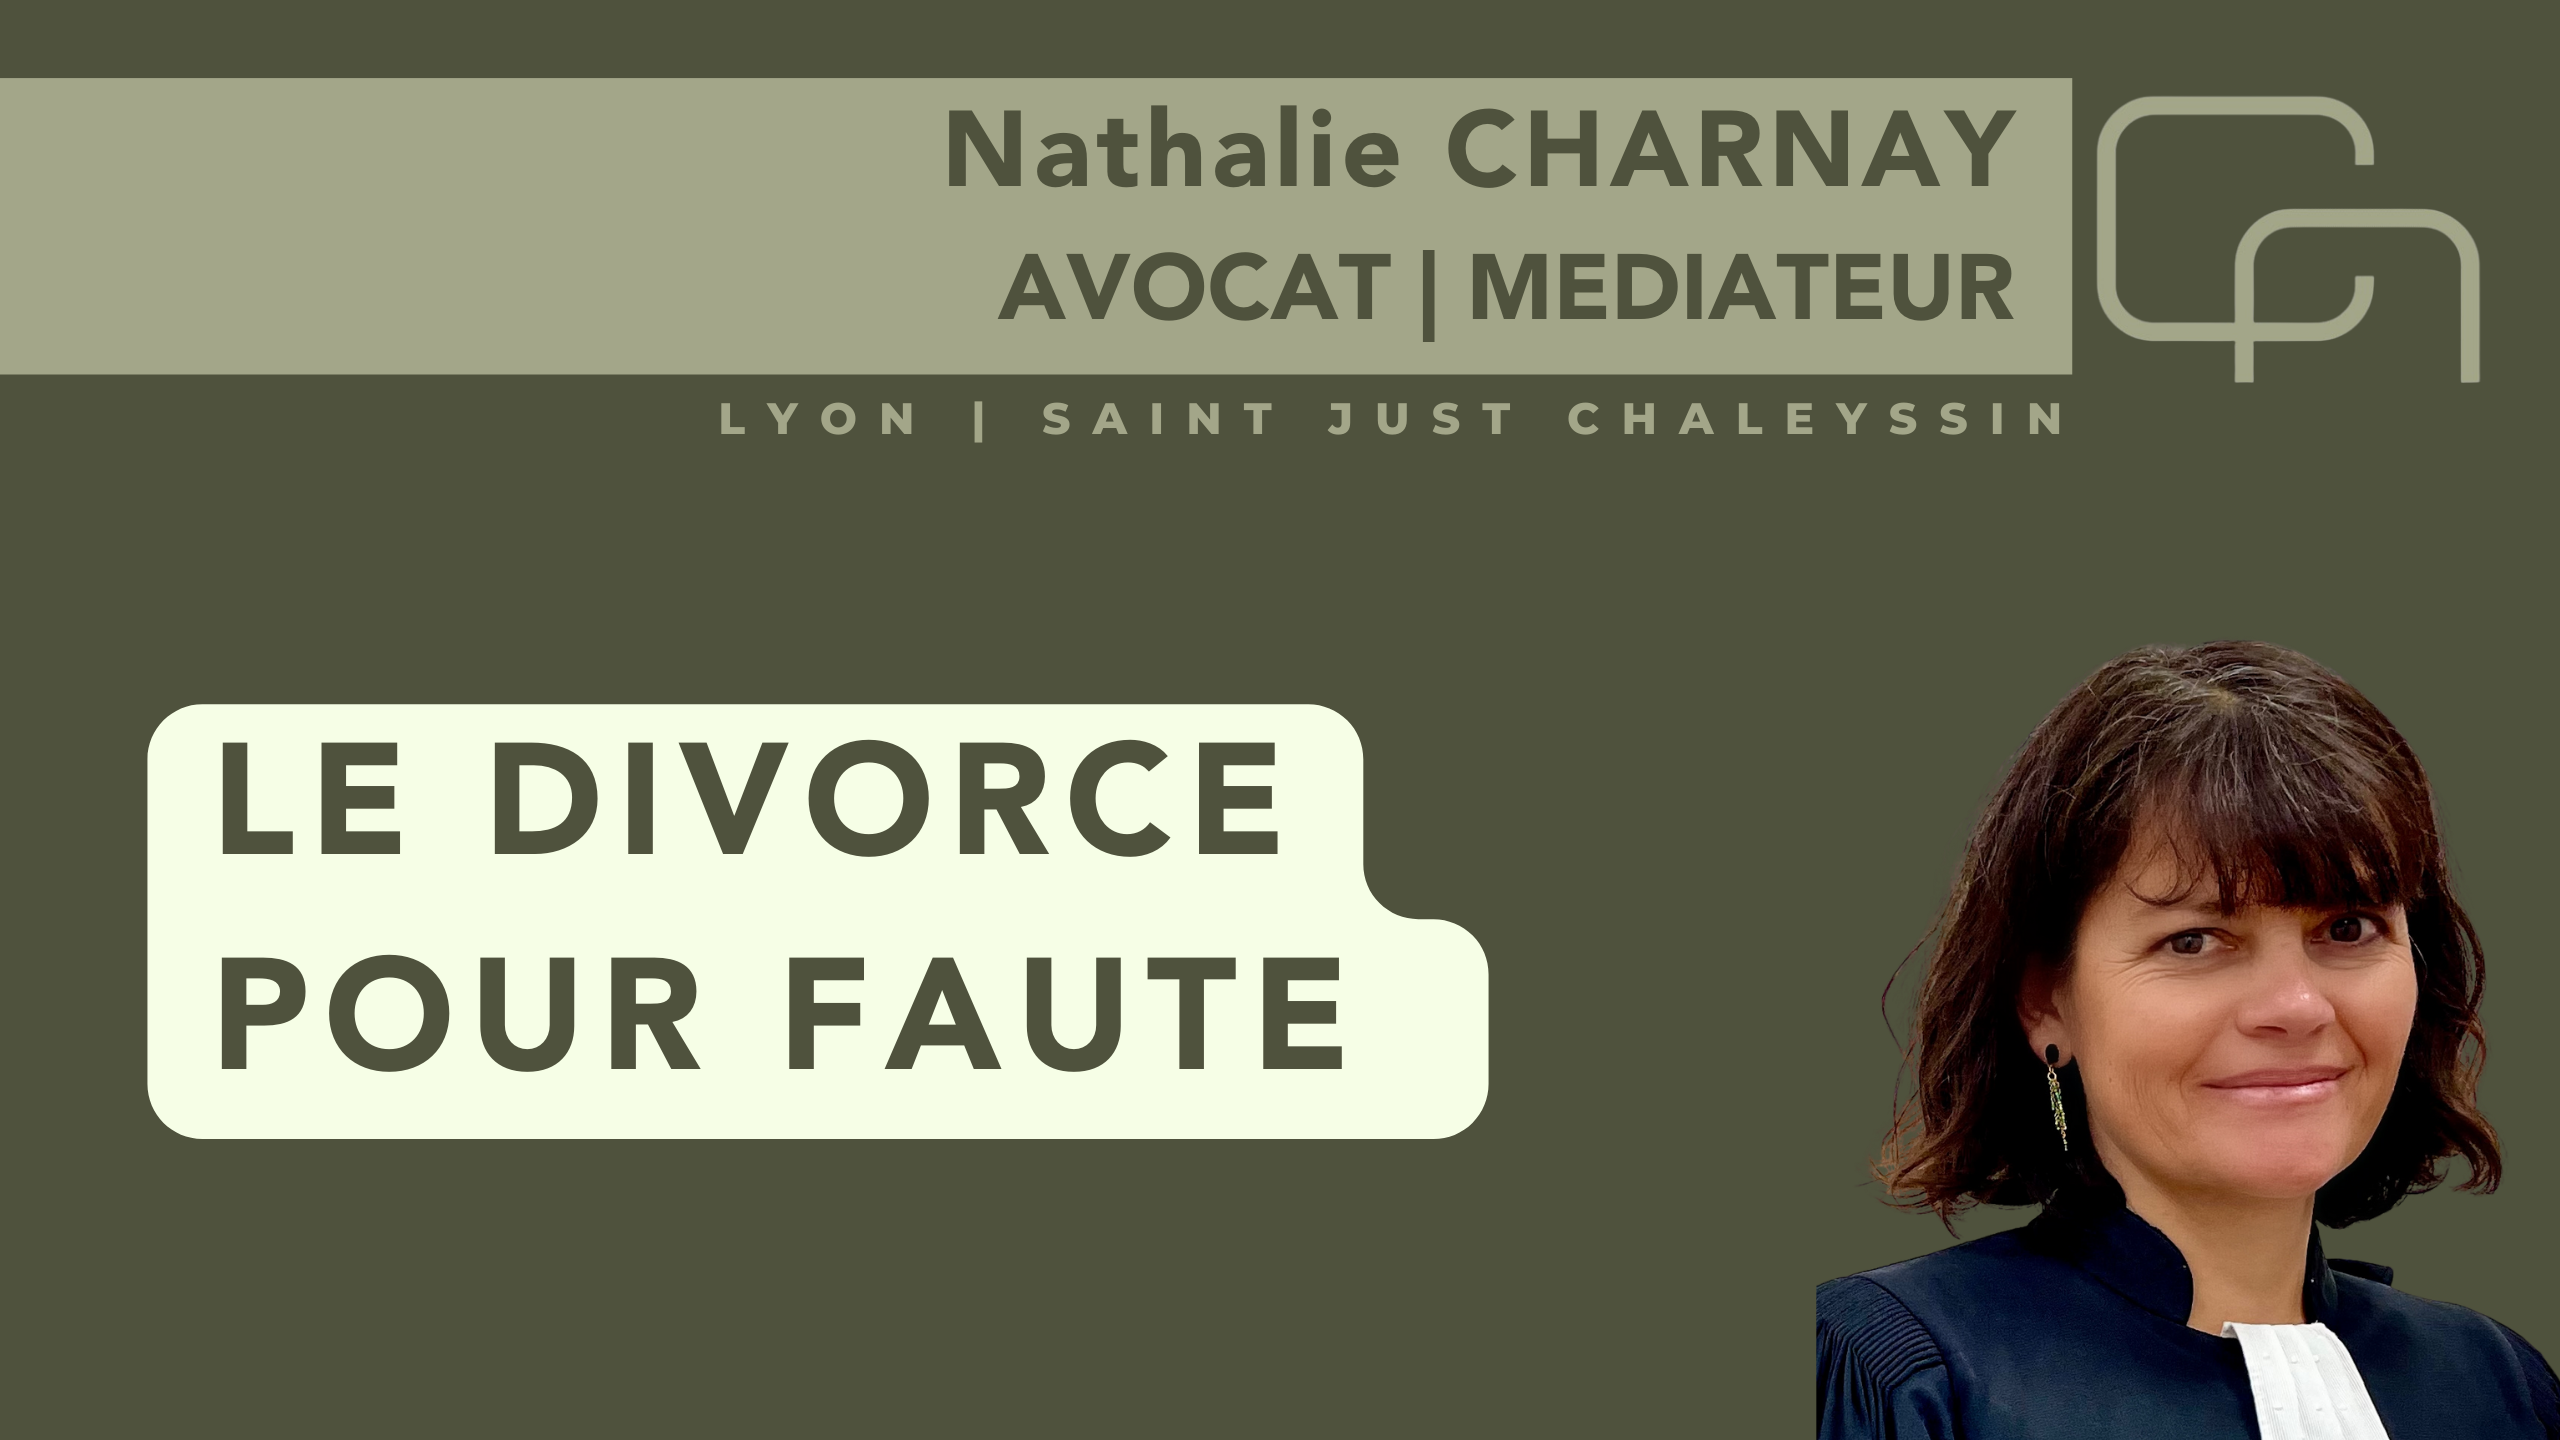 Vidéo expliquant le divorce pour faute